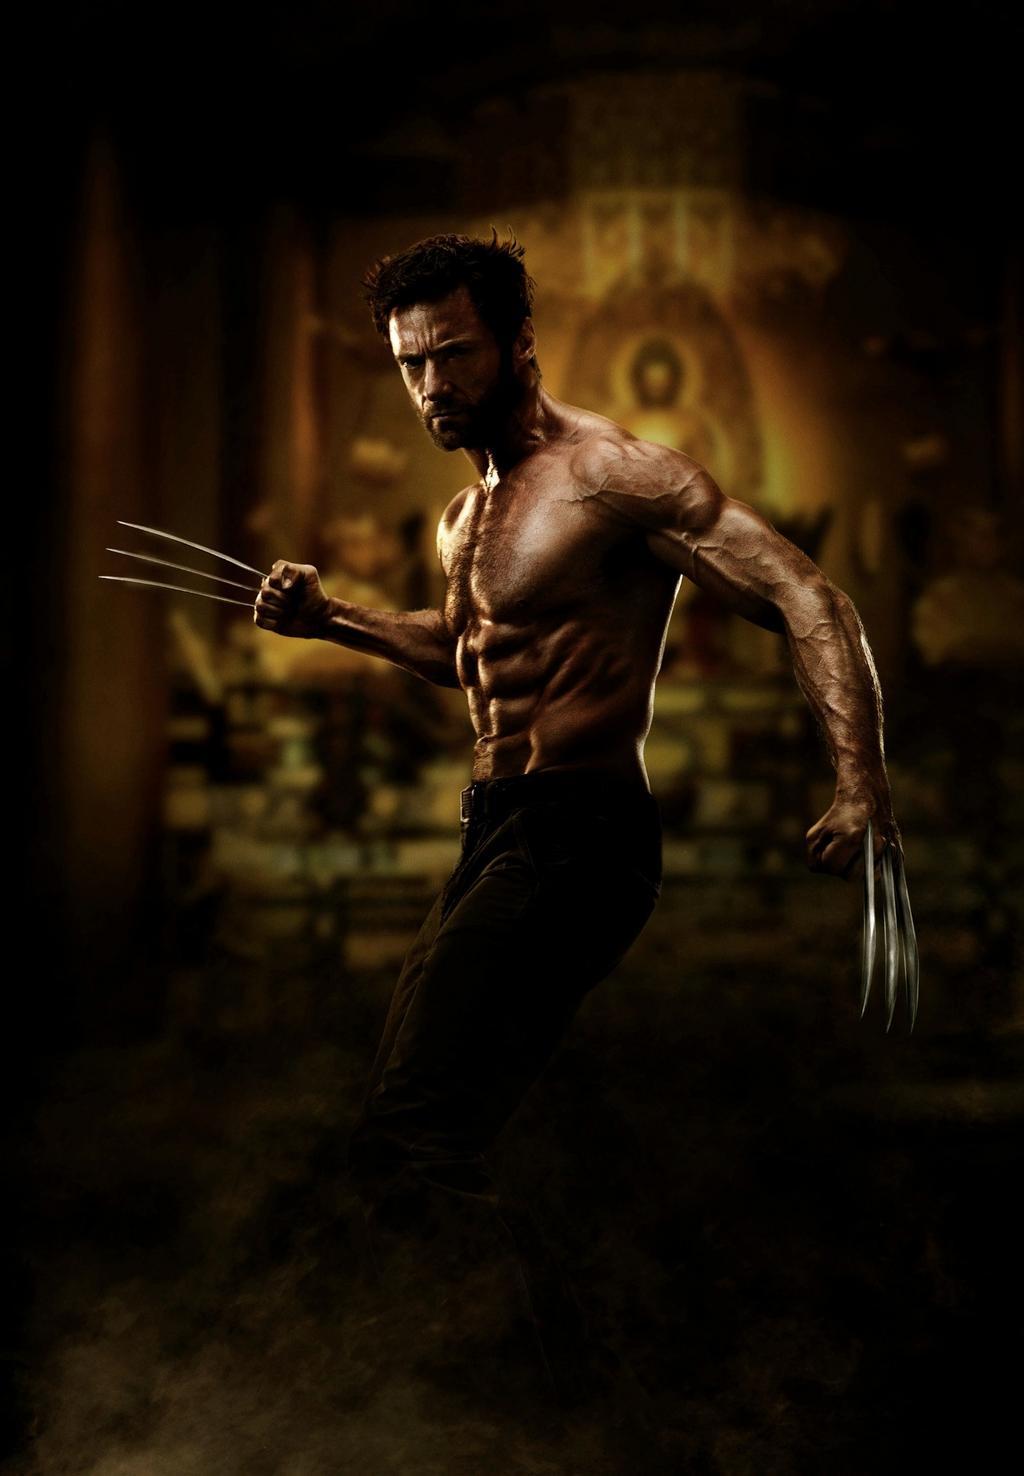 Wolverine 3 Filming Begins; R Rating Confirmed